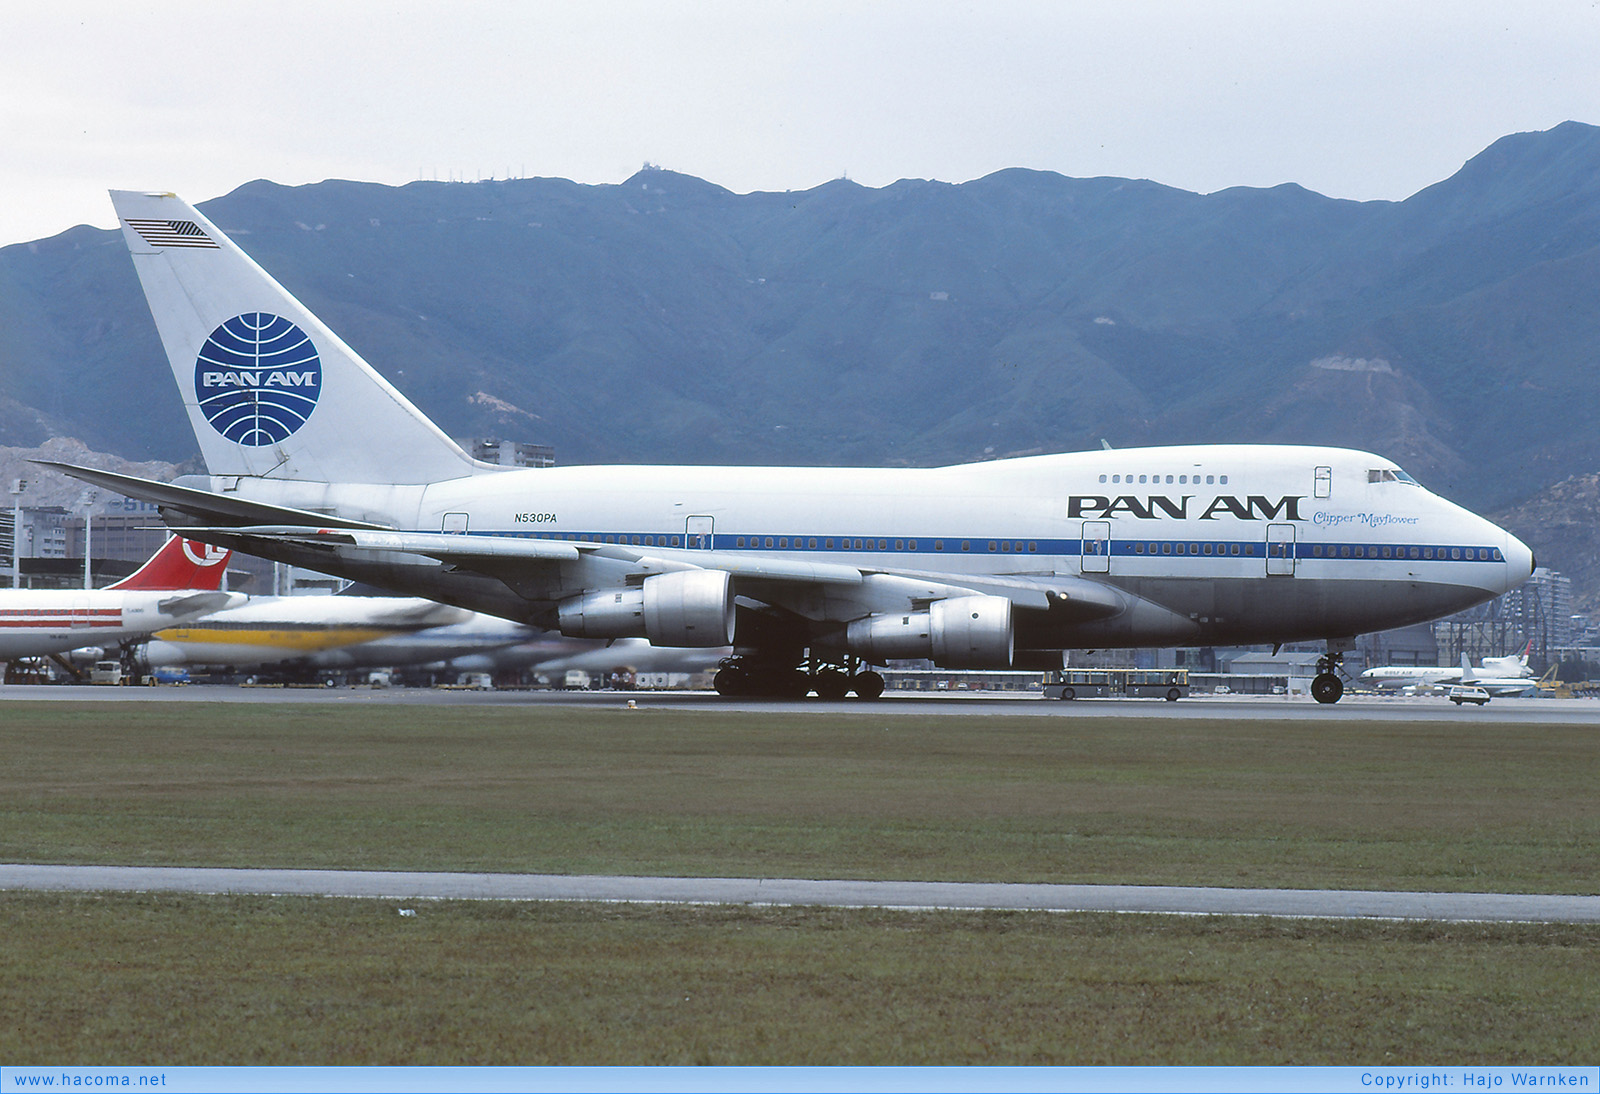 Foto von N530PA - Pan Am Clipper Mayflower - Flughafen Kai Tak - 16.04.1980